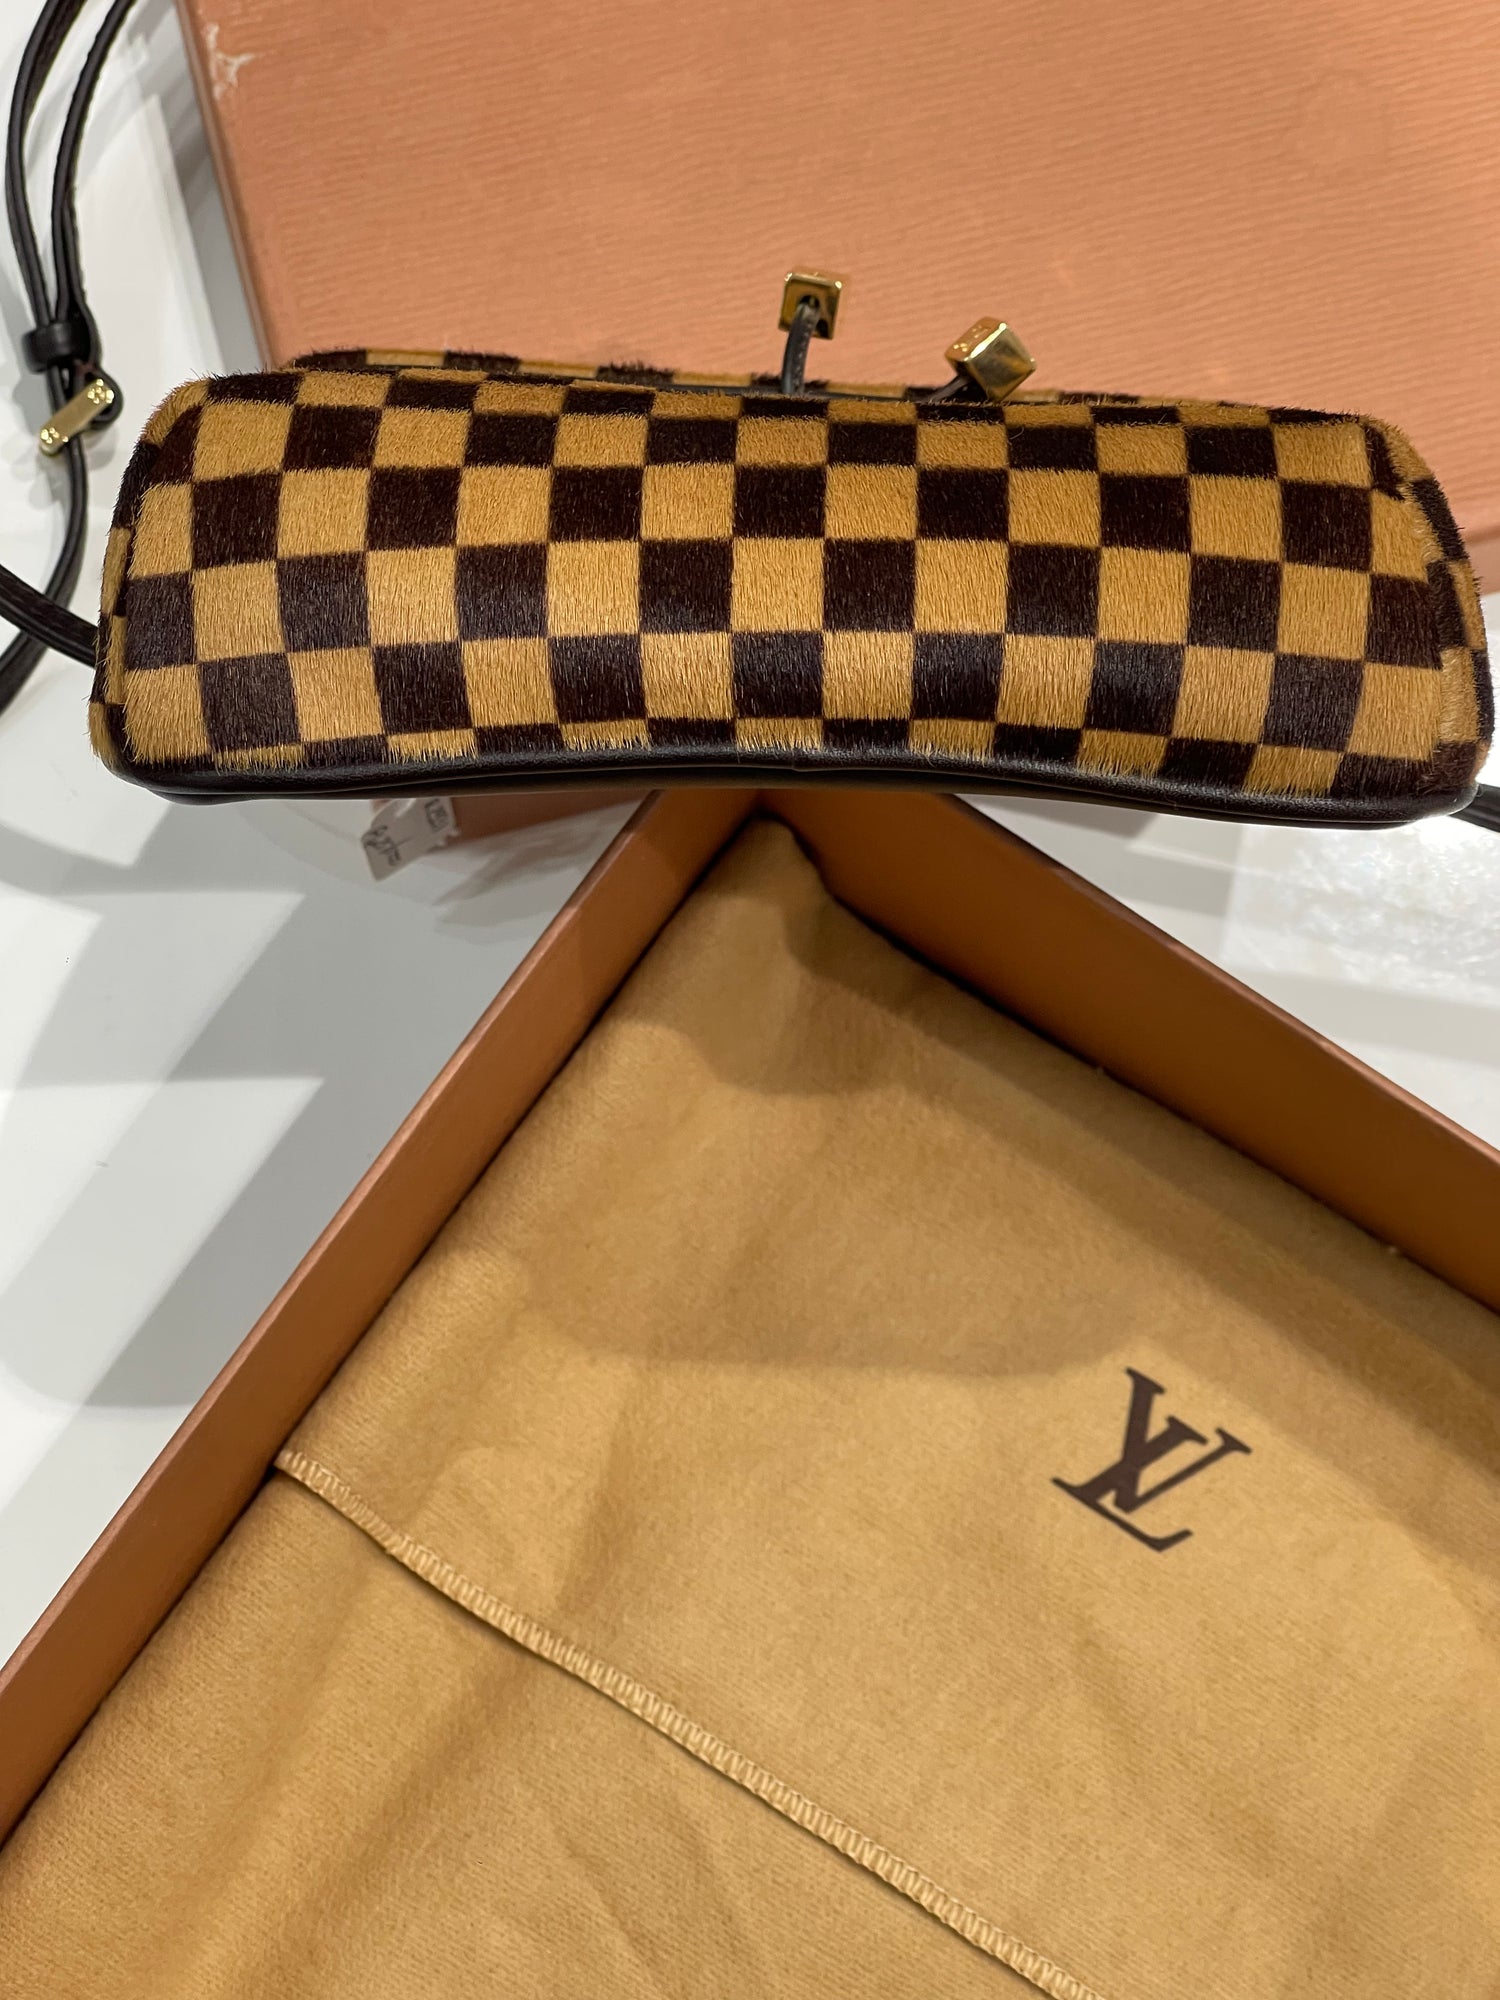 Louis Vuitton - Gazelle PM checkerboard bag